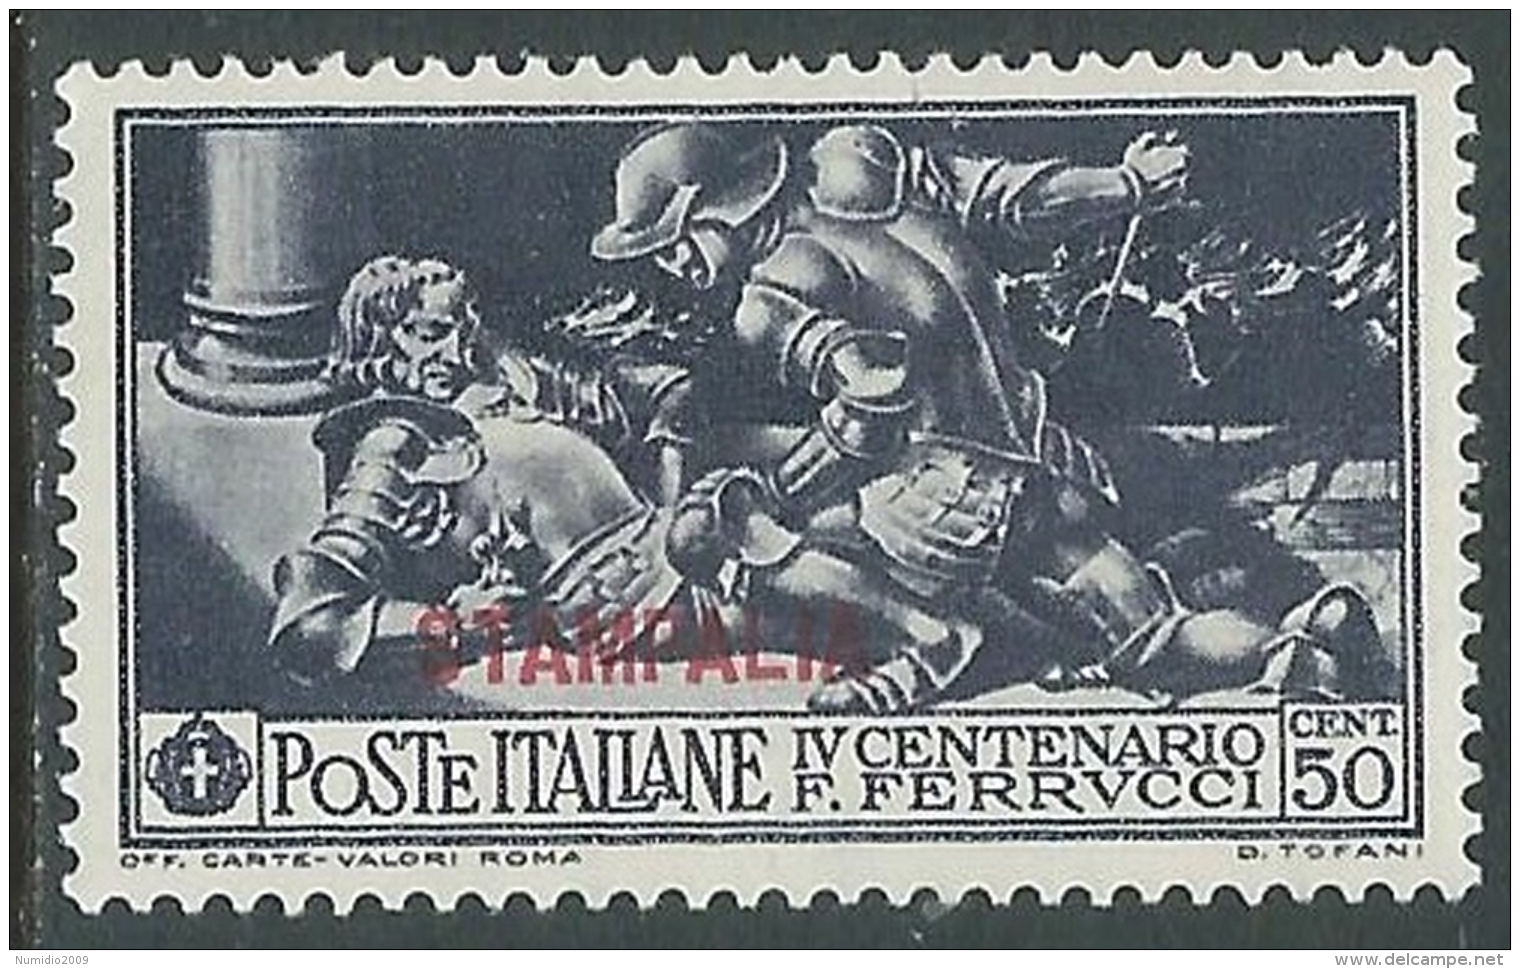 1930 EGEO STAMPALIA FERRUCCI 50 CENT MH * - I39-9 - Egée (Stampalia)